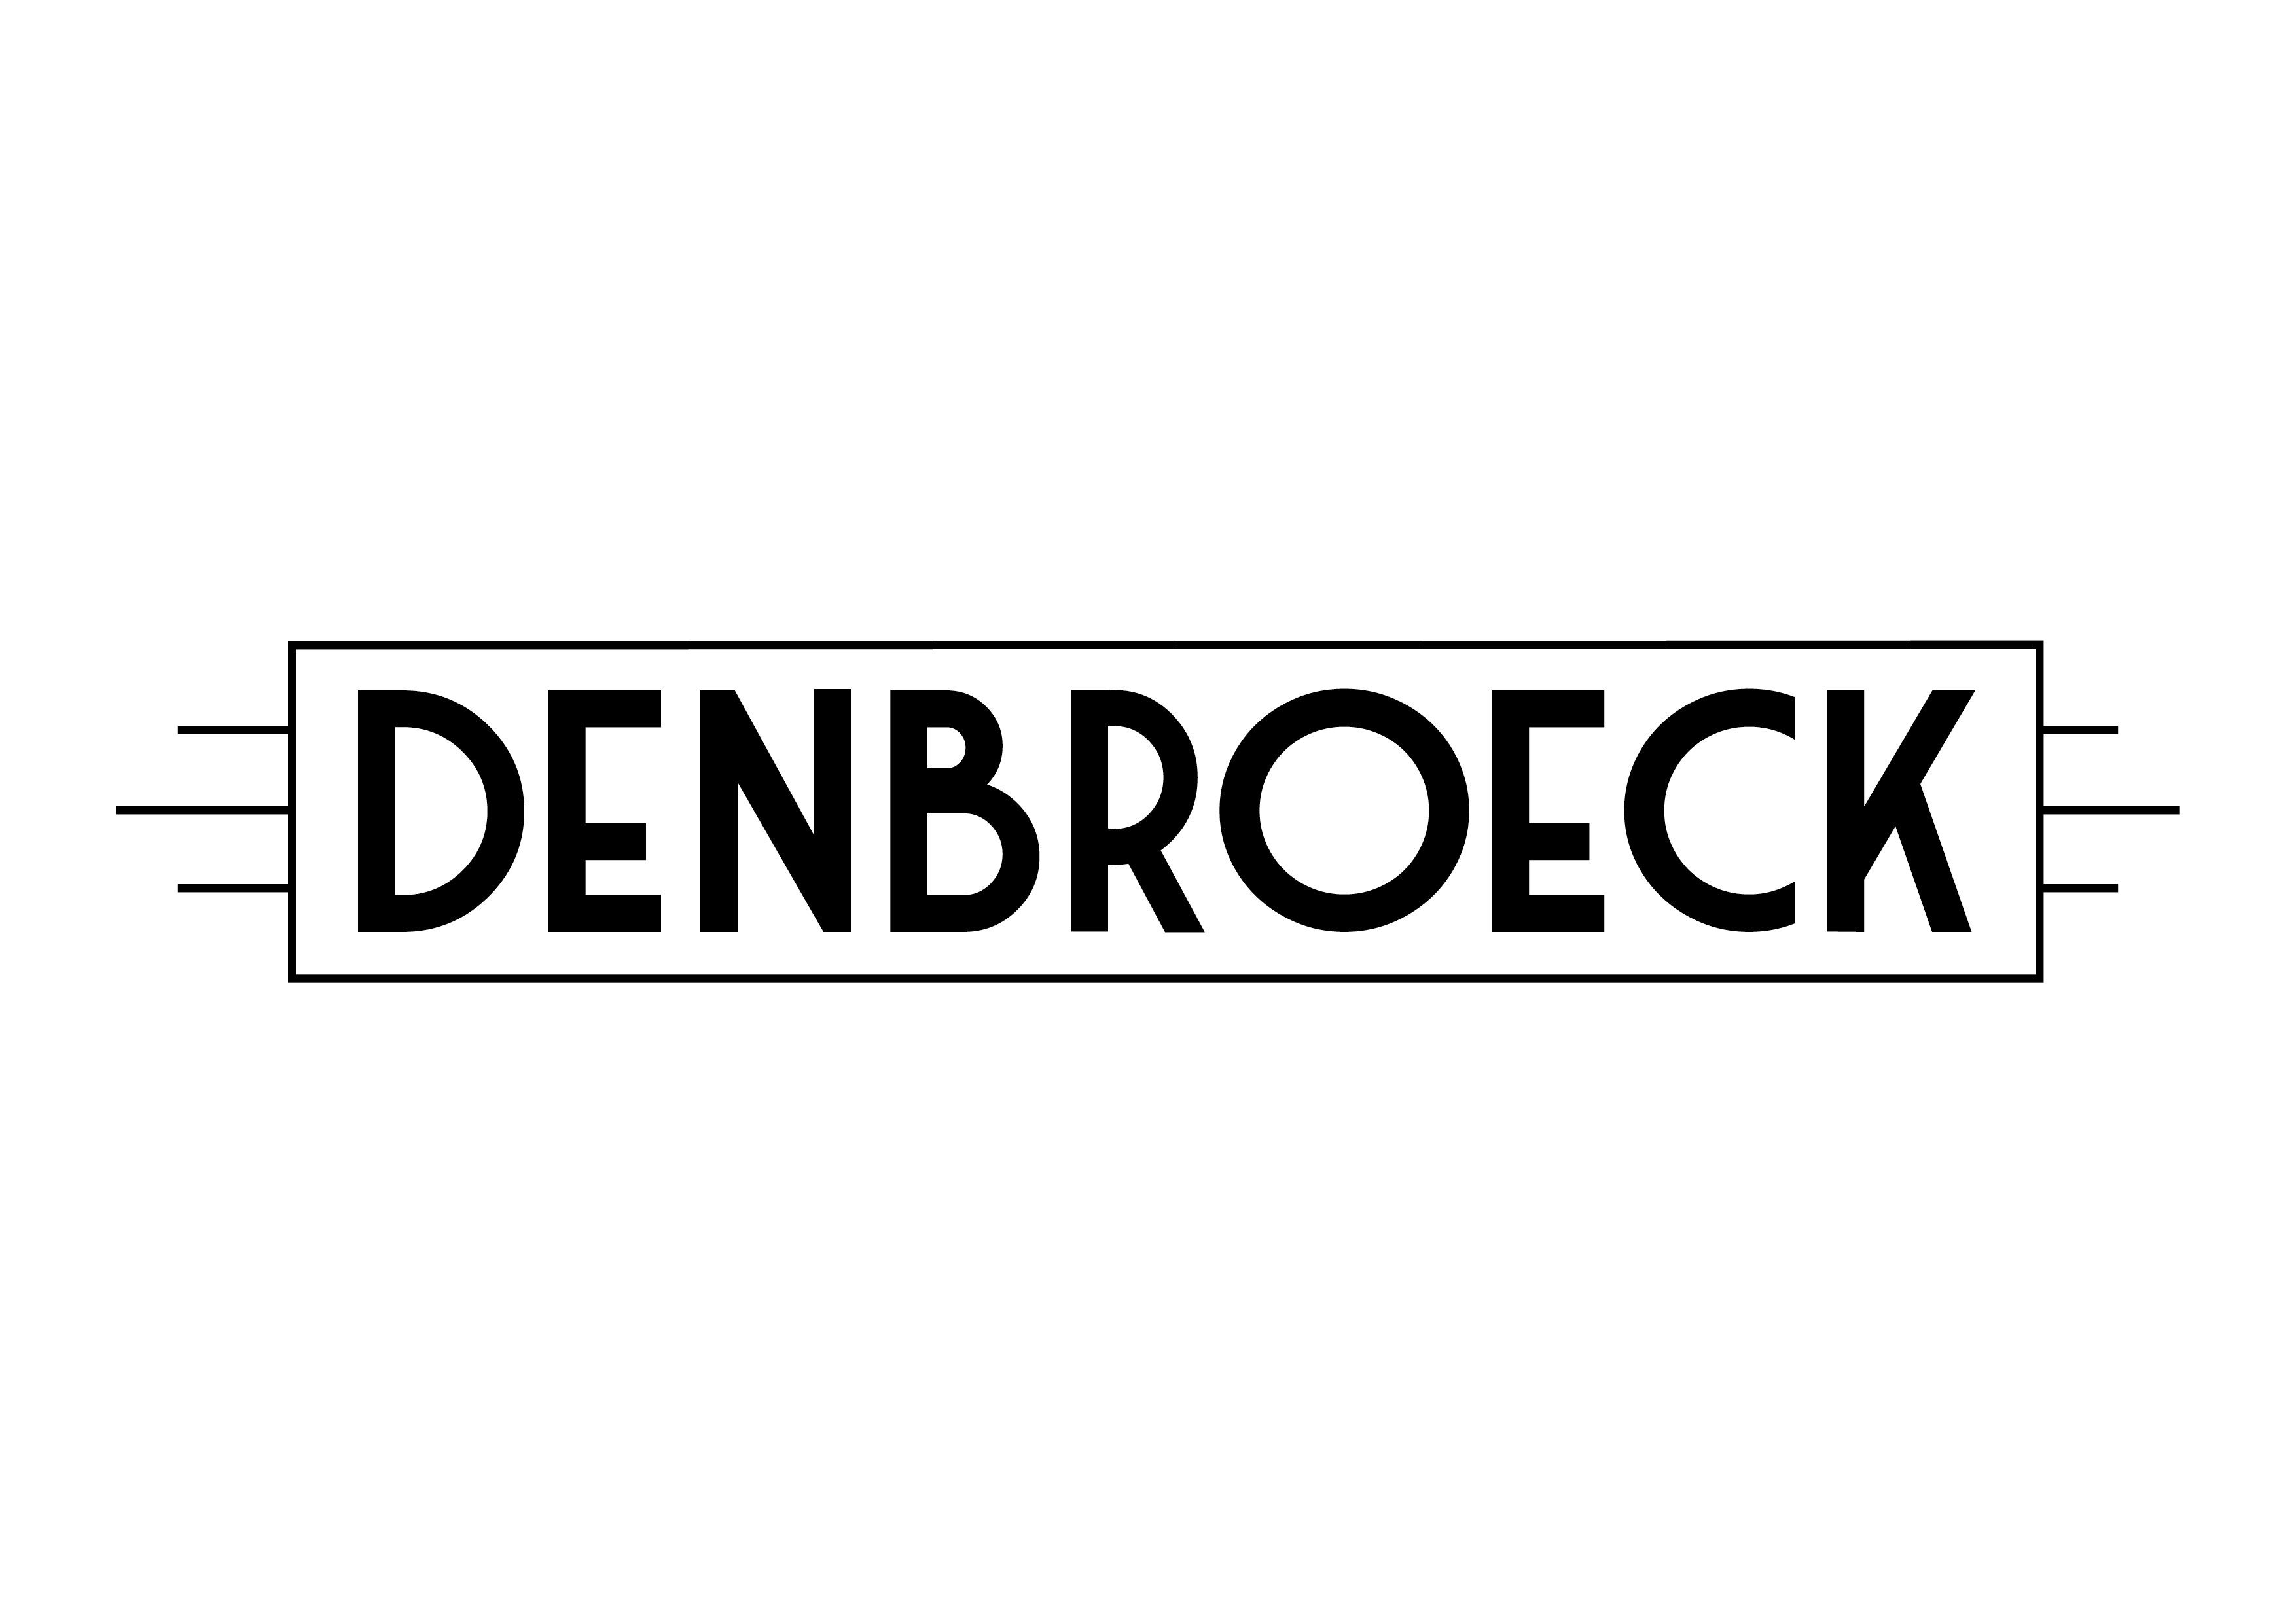 DenBroeck